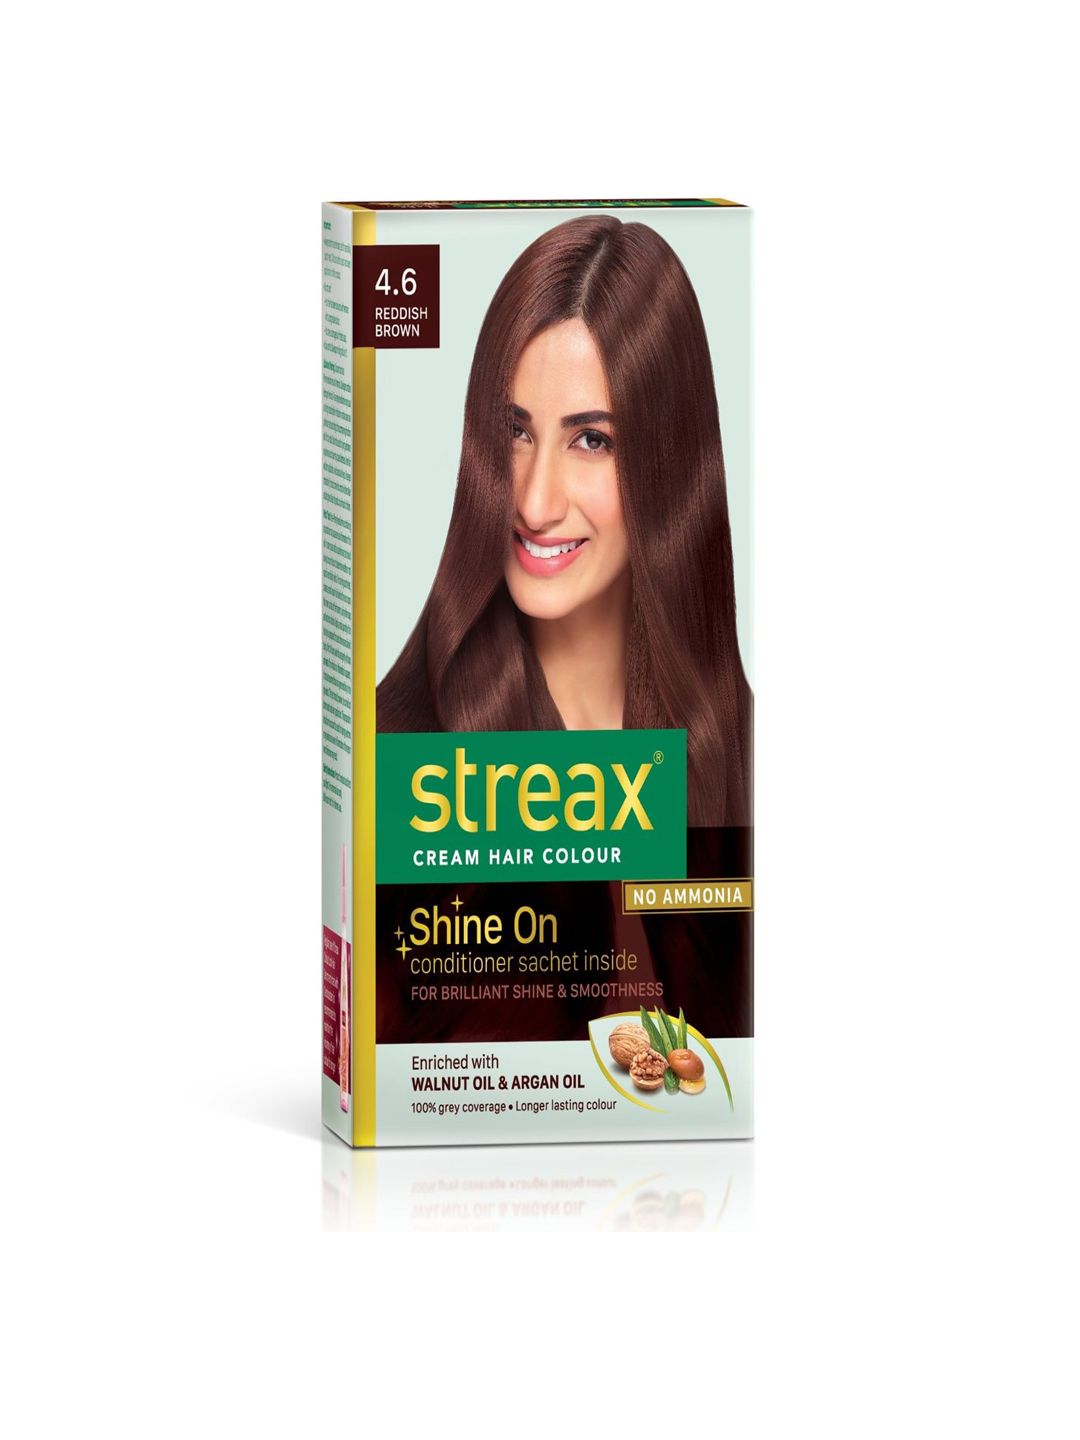 Streax Cream Hair Colour - 4.6 Reddish Brown 120ml Price in India